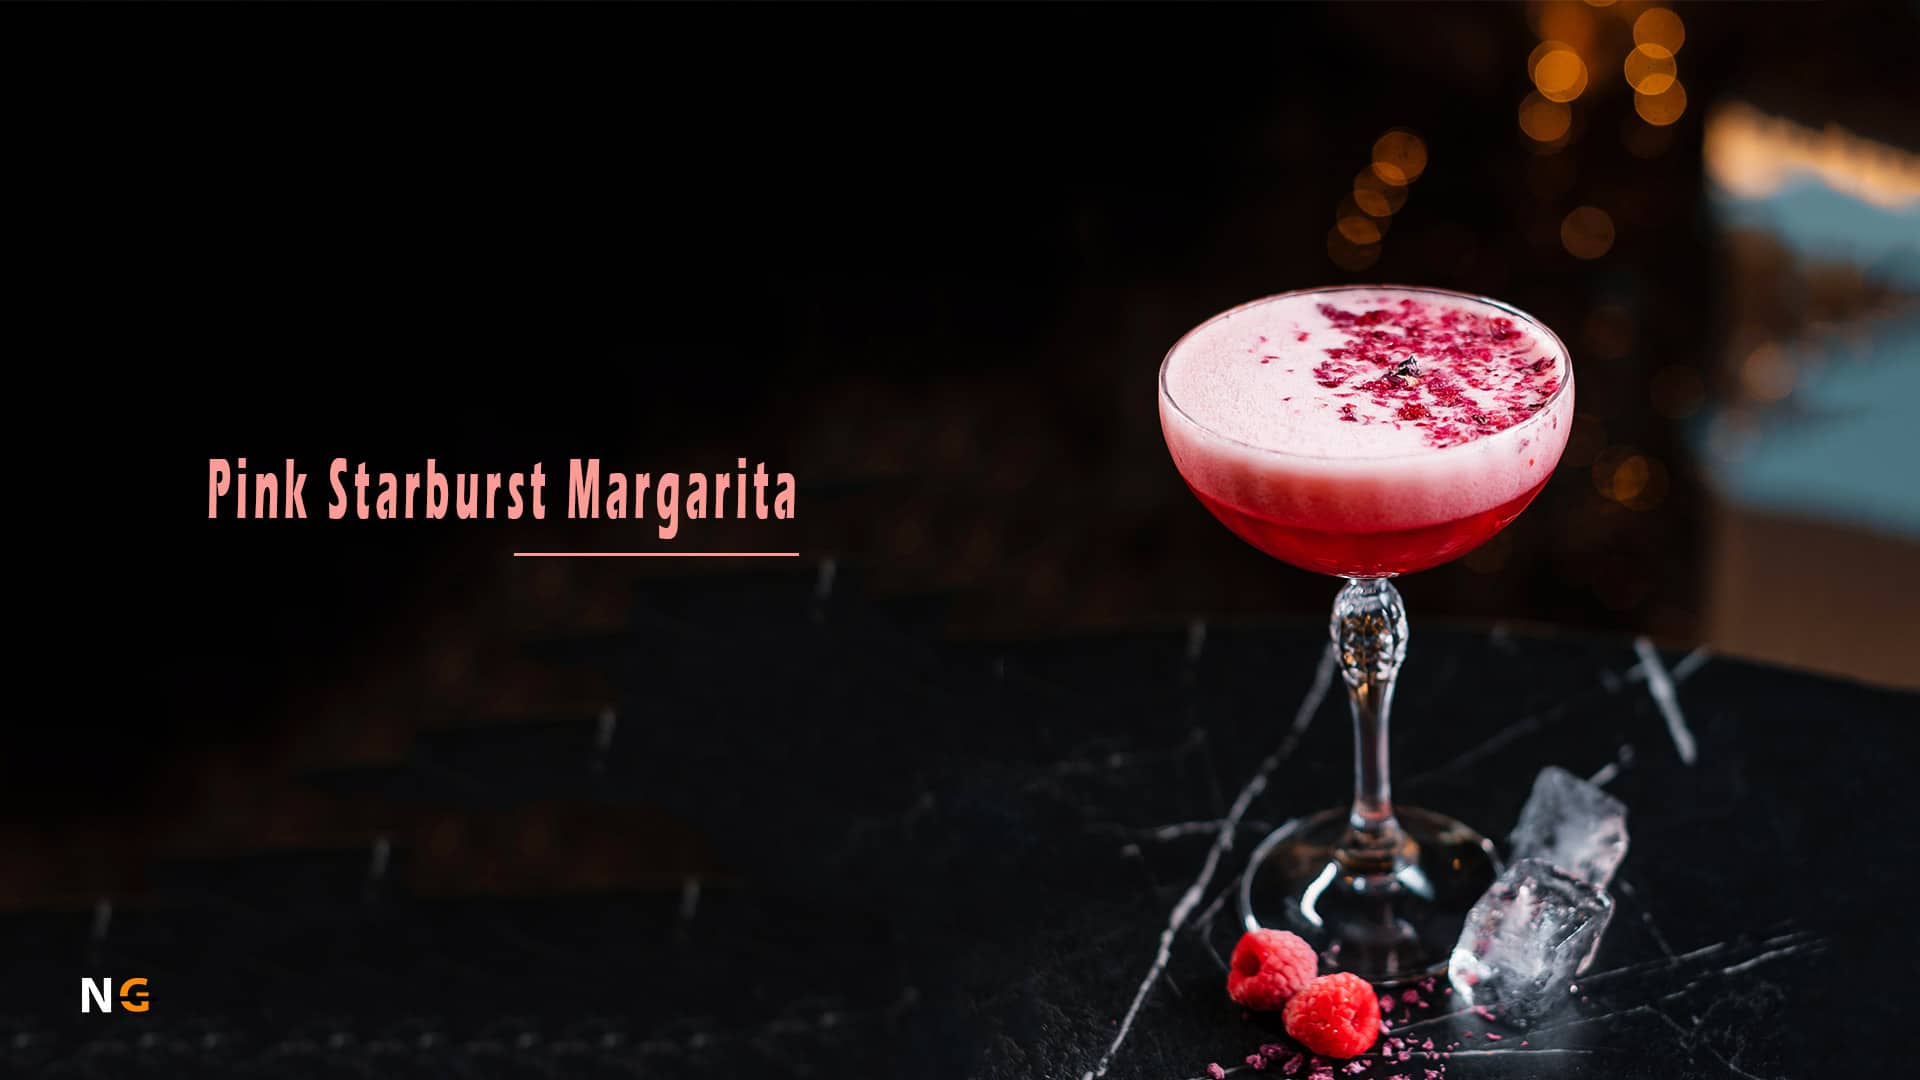 Pink Starburst Margarita